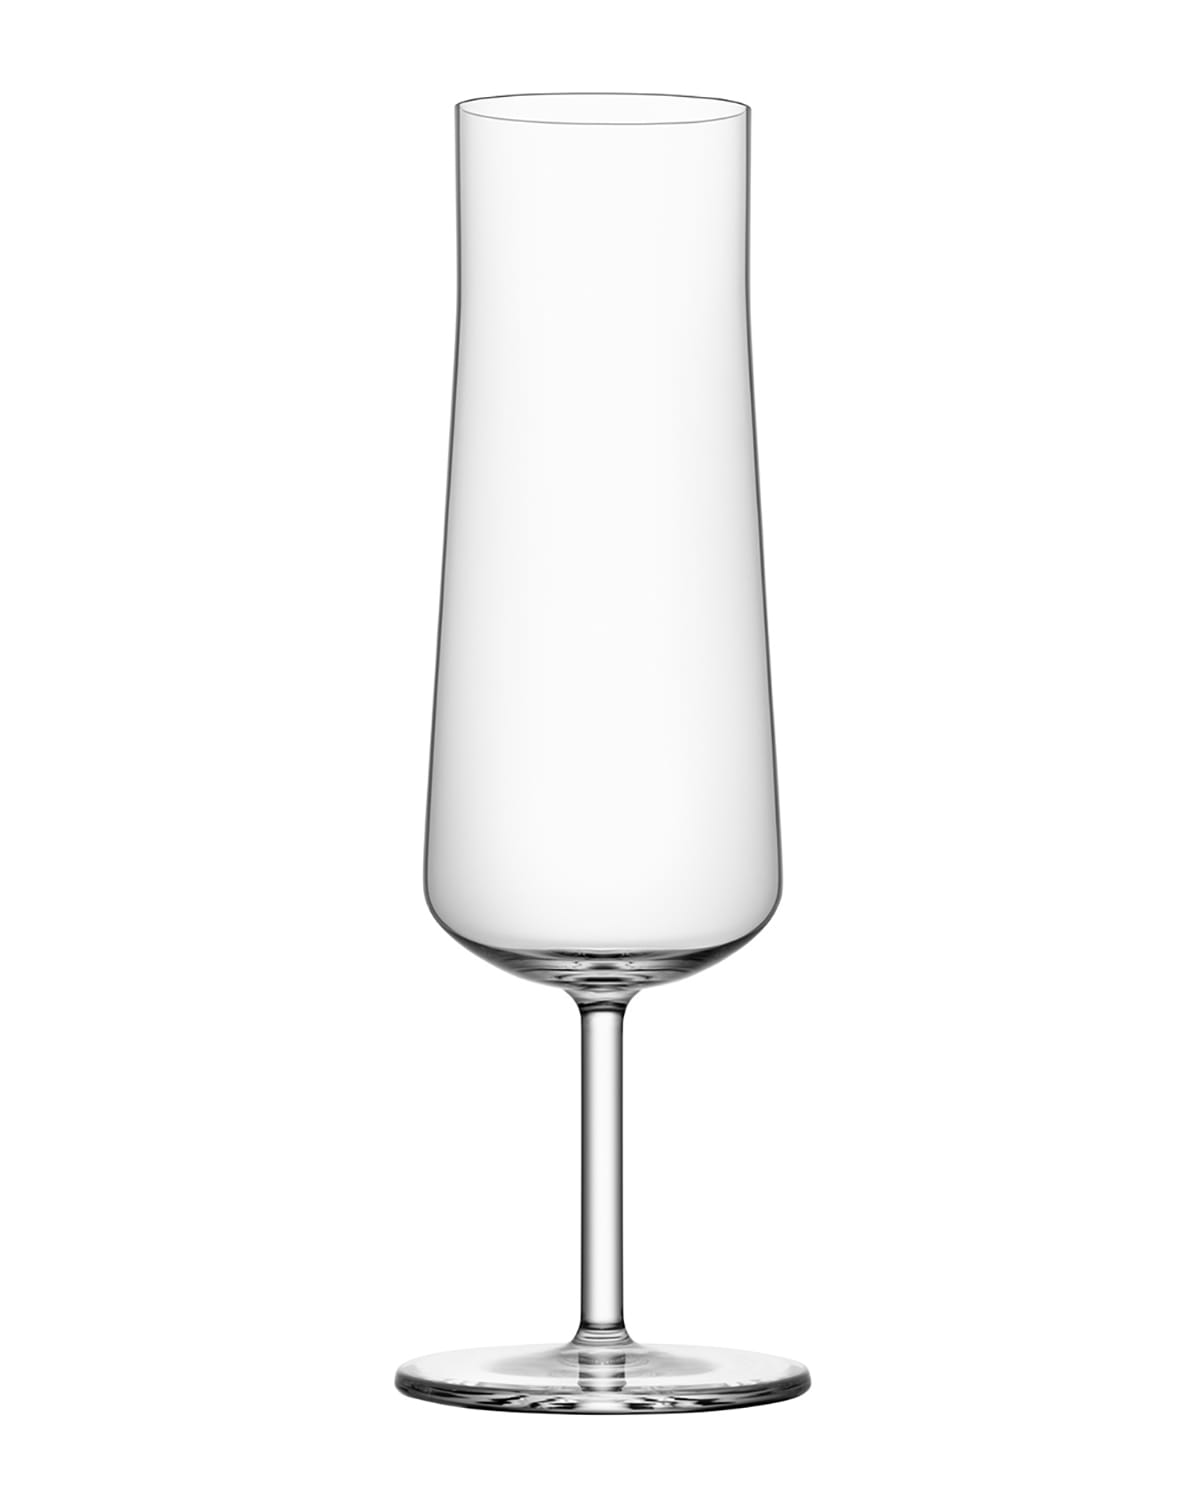 ORREFORS INFORMAL CHAMPAGNE GLASSES, SET OF 2